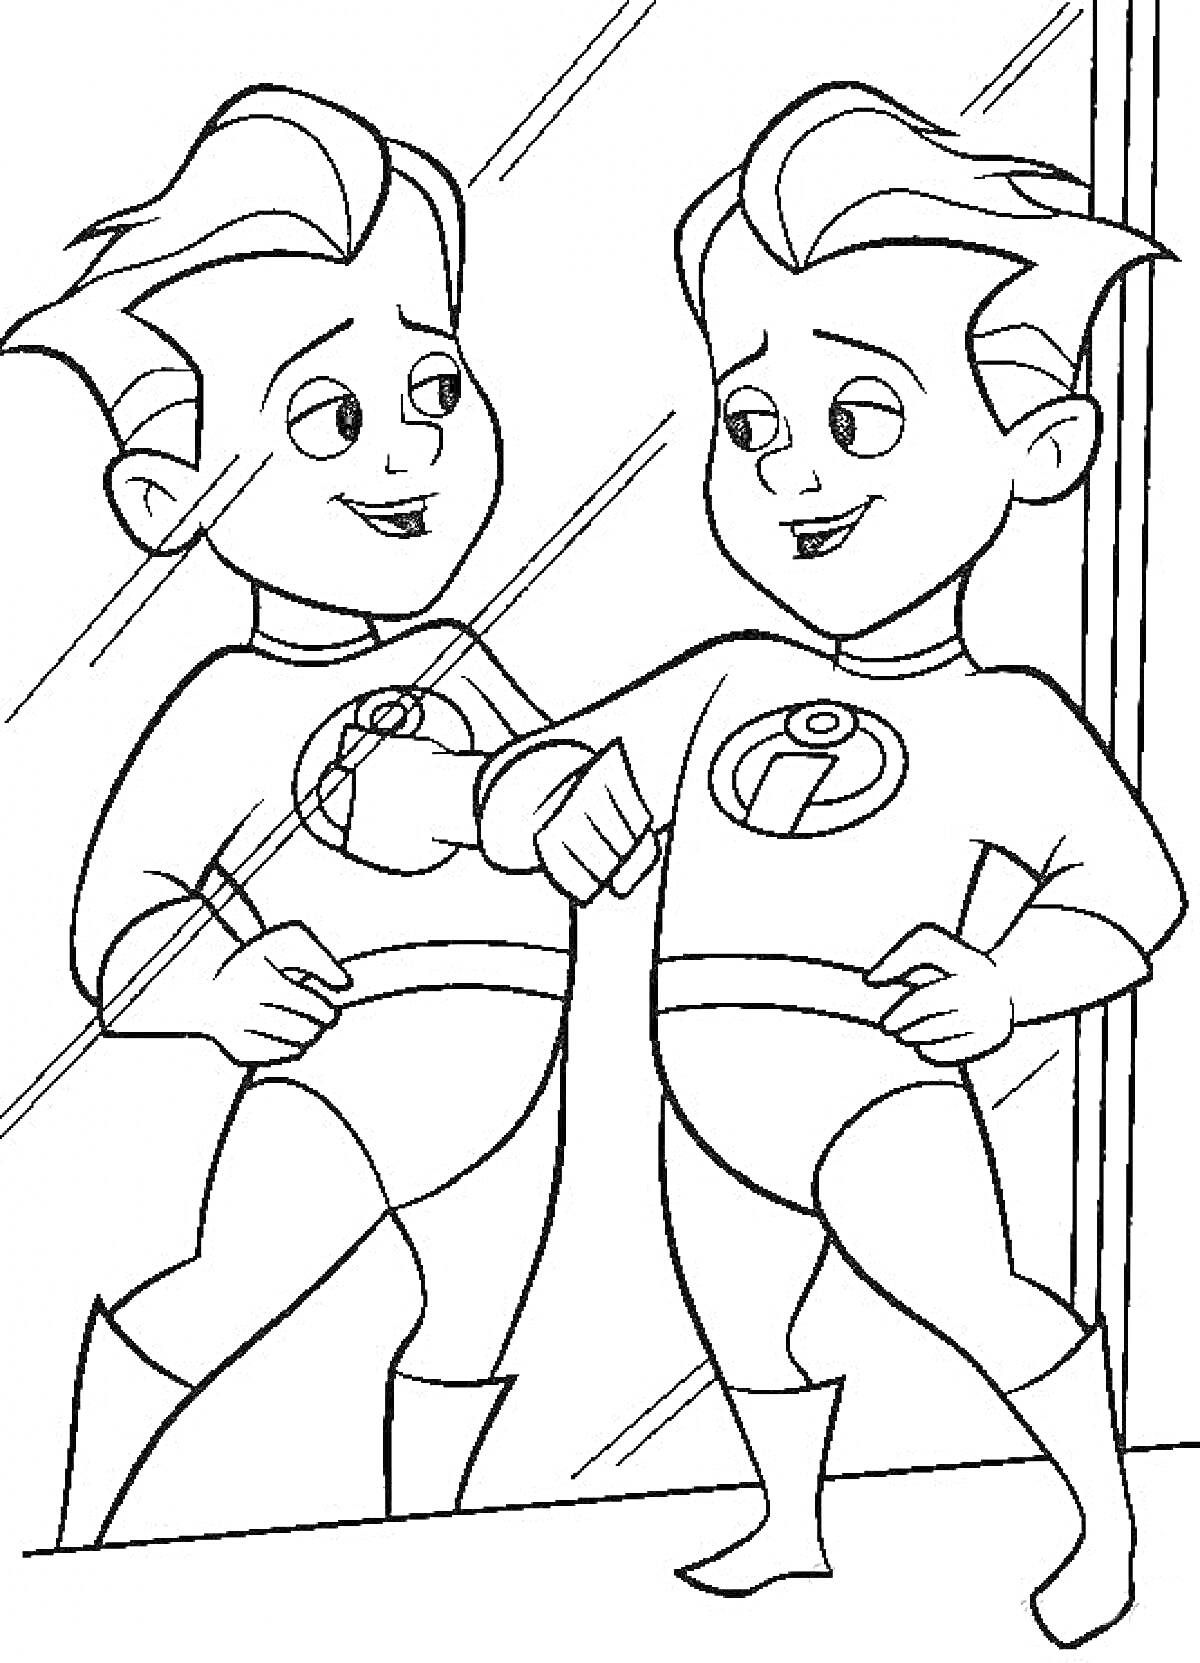 Раскраска Мальчик-супергерой из Суперсемейки смотрится в зеркало